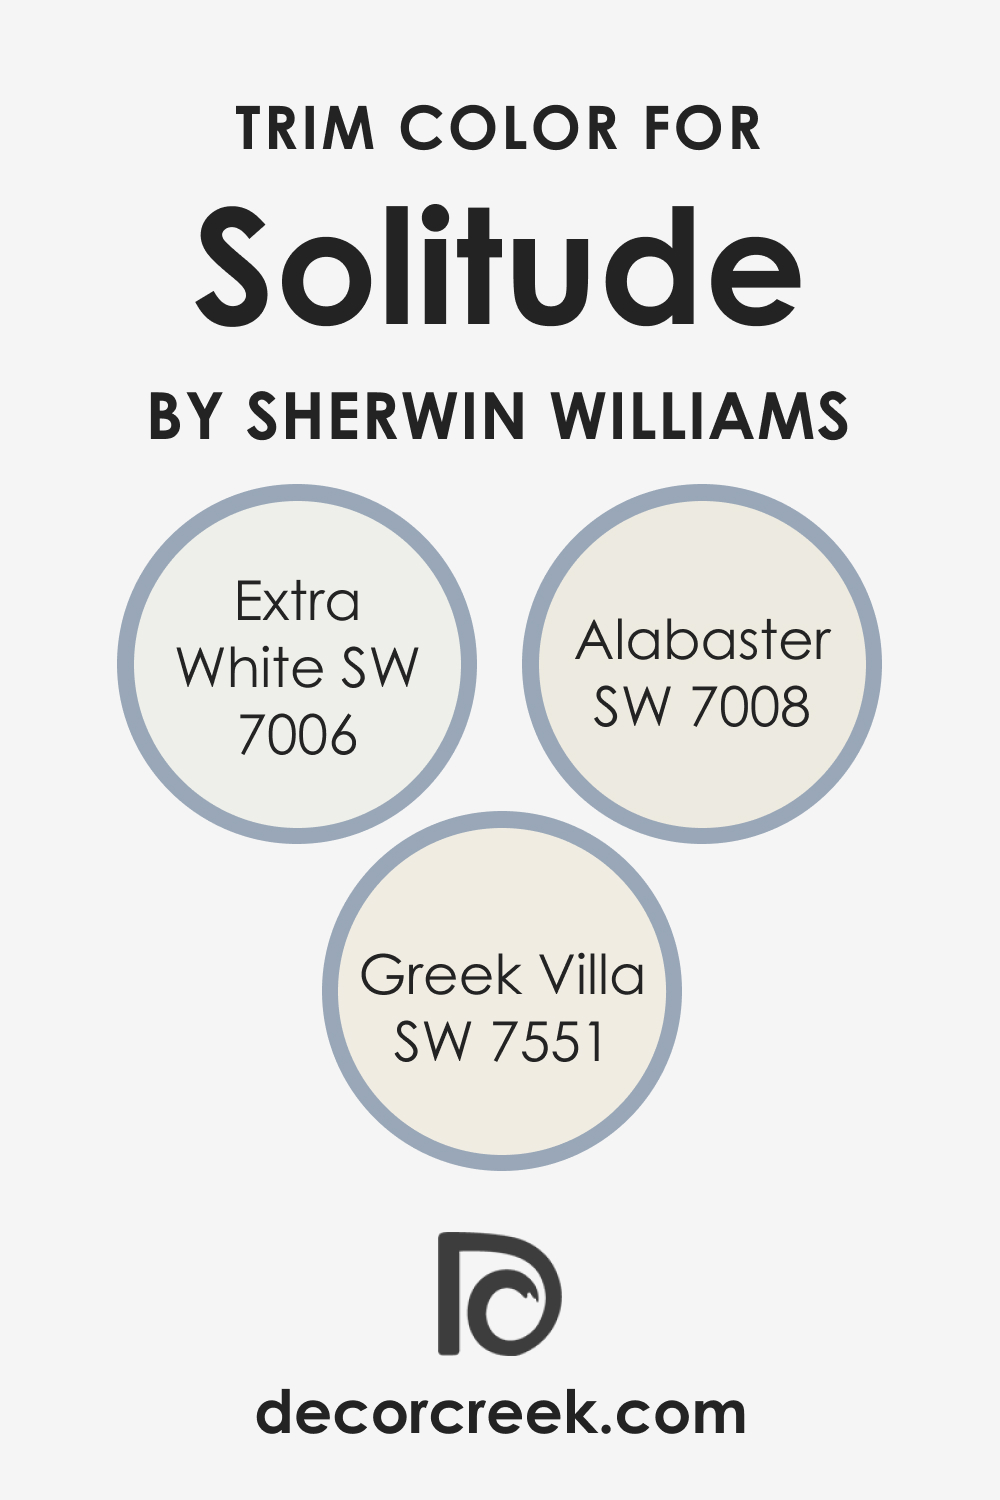 Trim Colors of SW 6535 Solitude